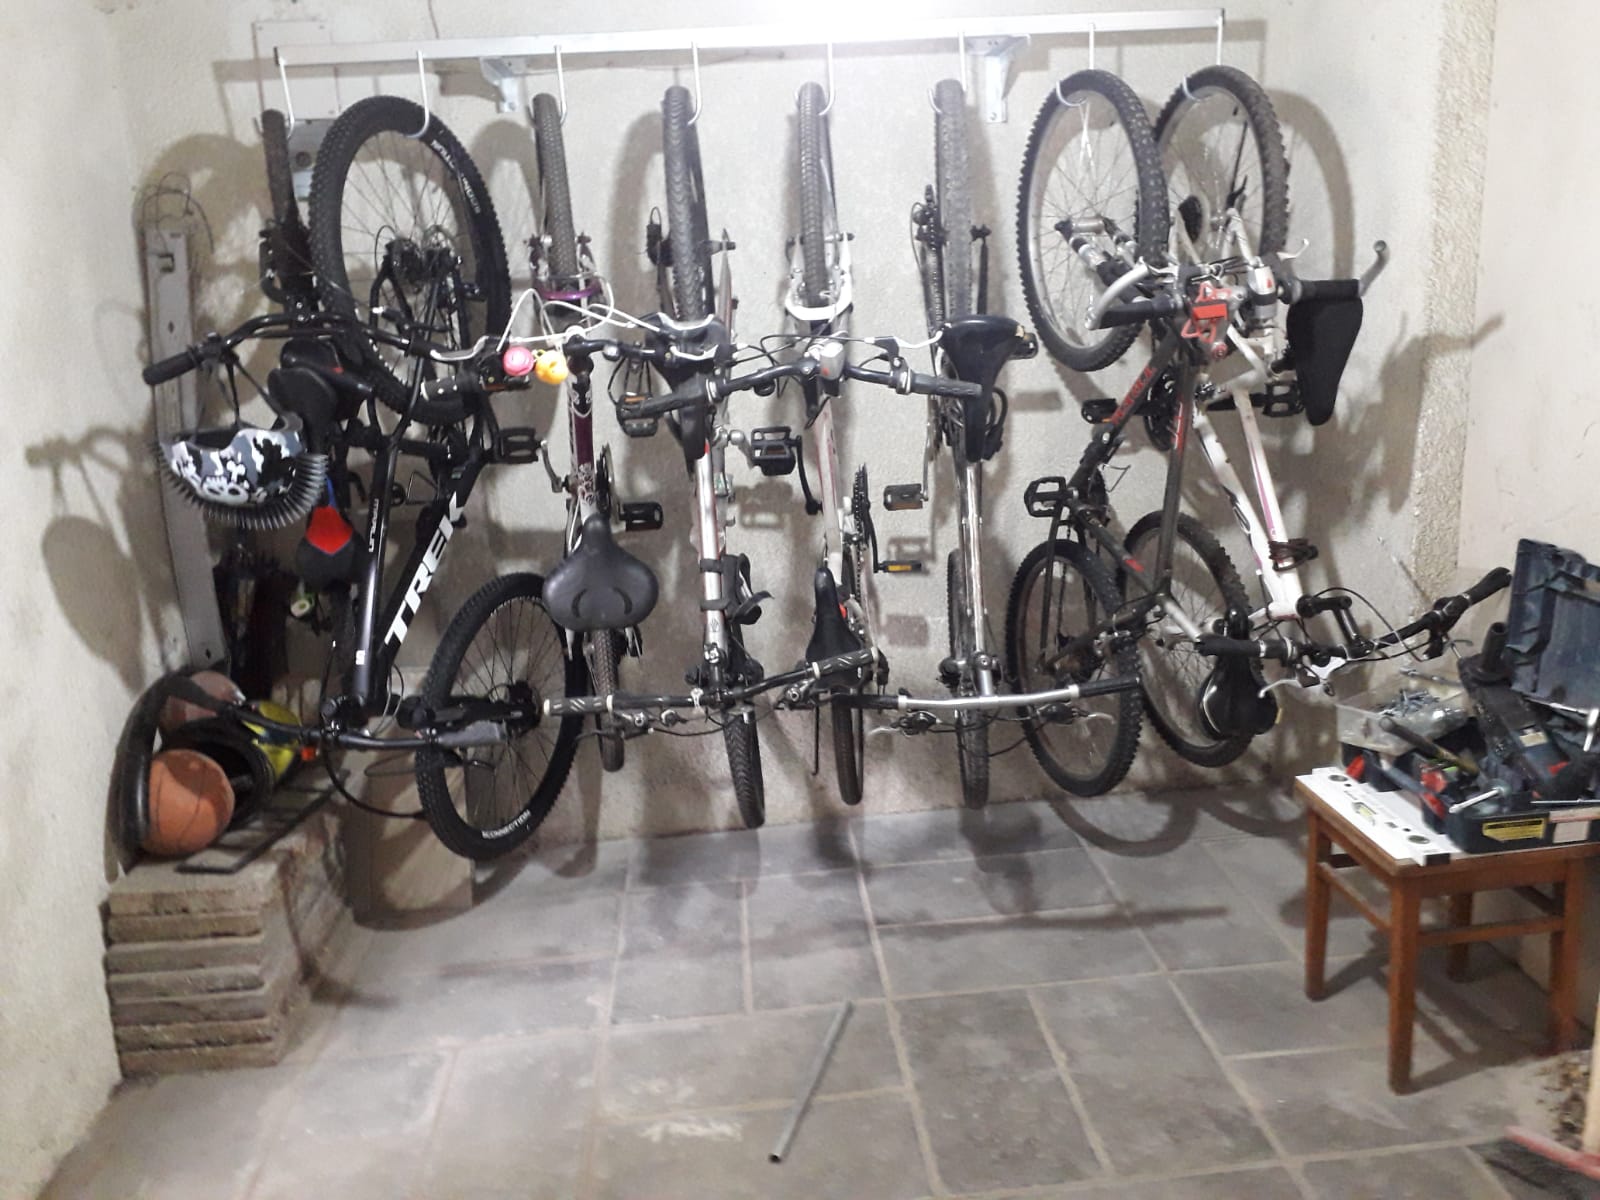 סידור חדרי אופניים - מתקן לחדר אופניים בהתאמה אישית ללקוח